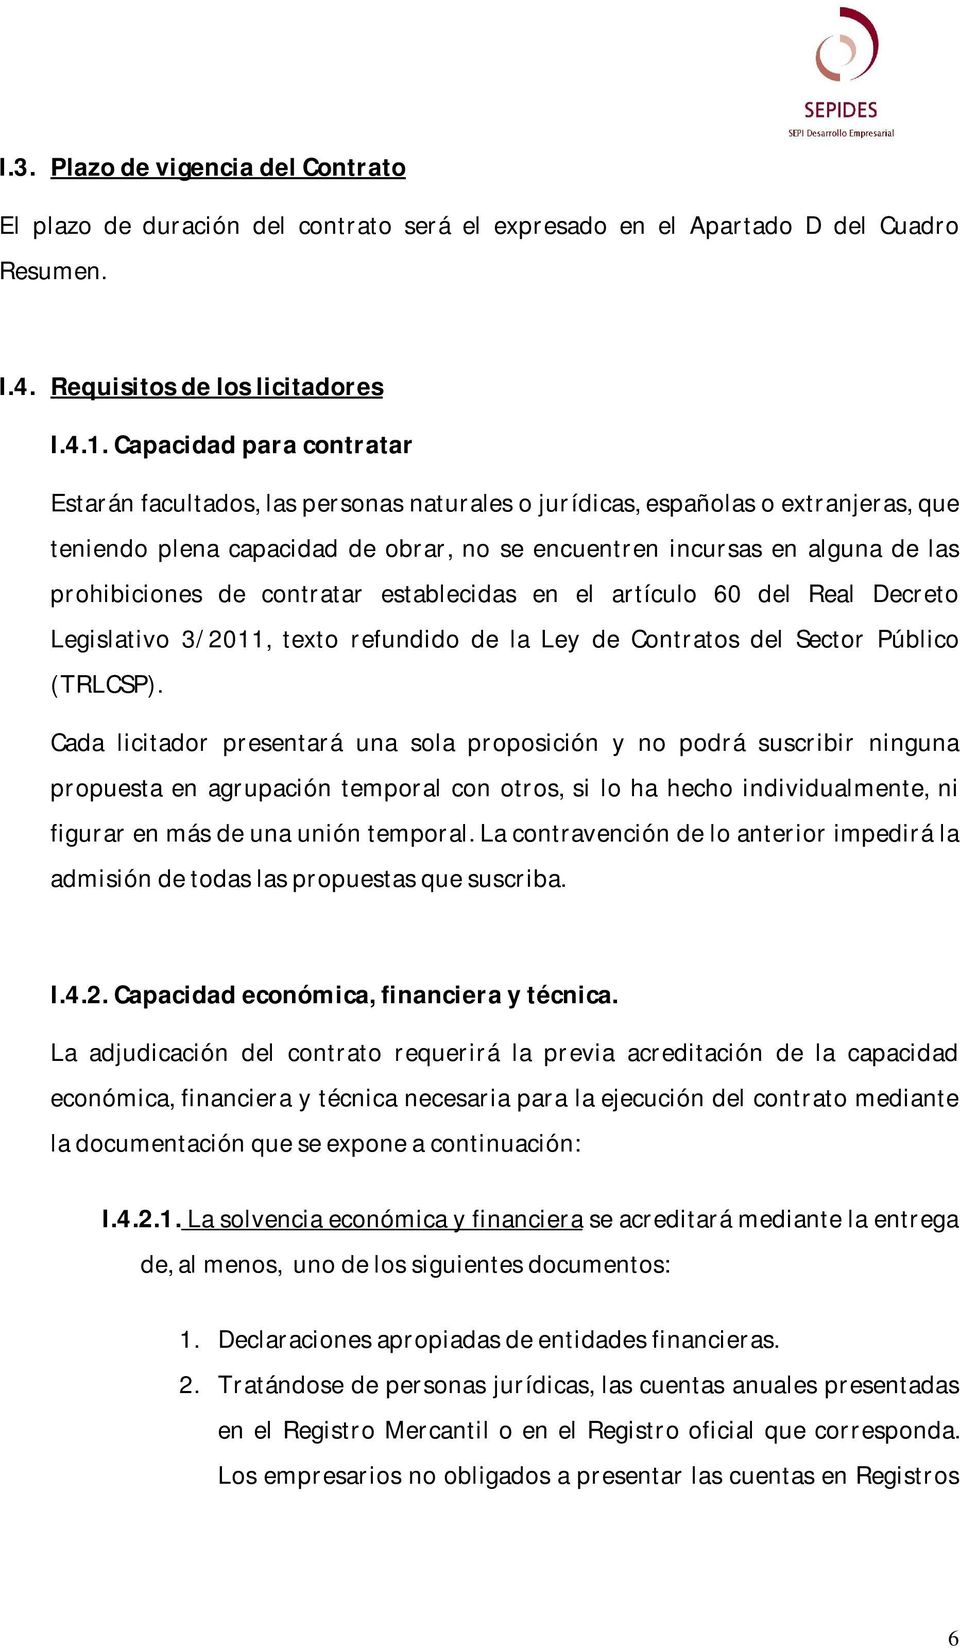 prohibiciones de contratar establecidas en el artículo 60 del Real Decreto Legislativo 3/2011, texto refundido de la Ley de Contratos del Sector Público (TRLCSP).